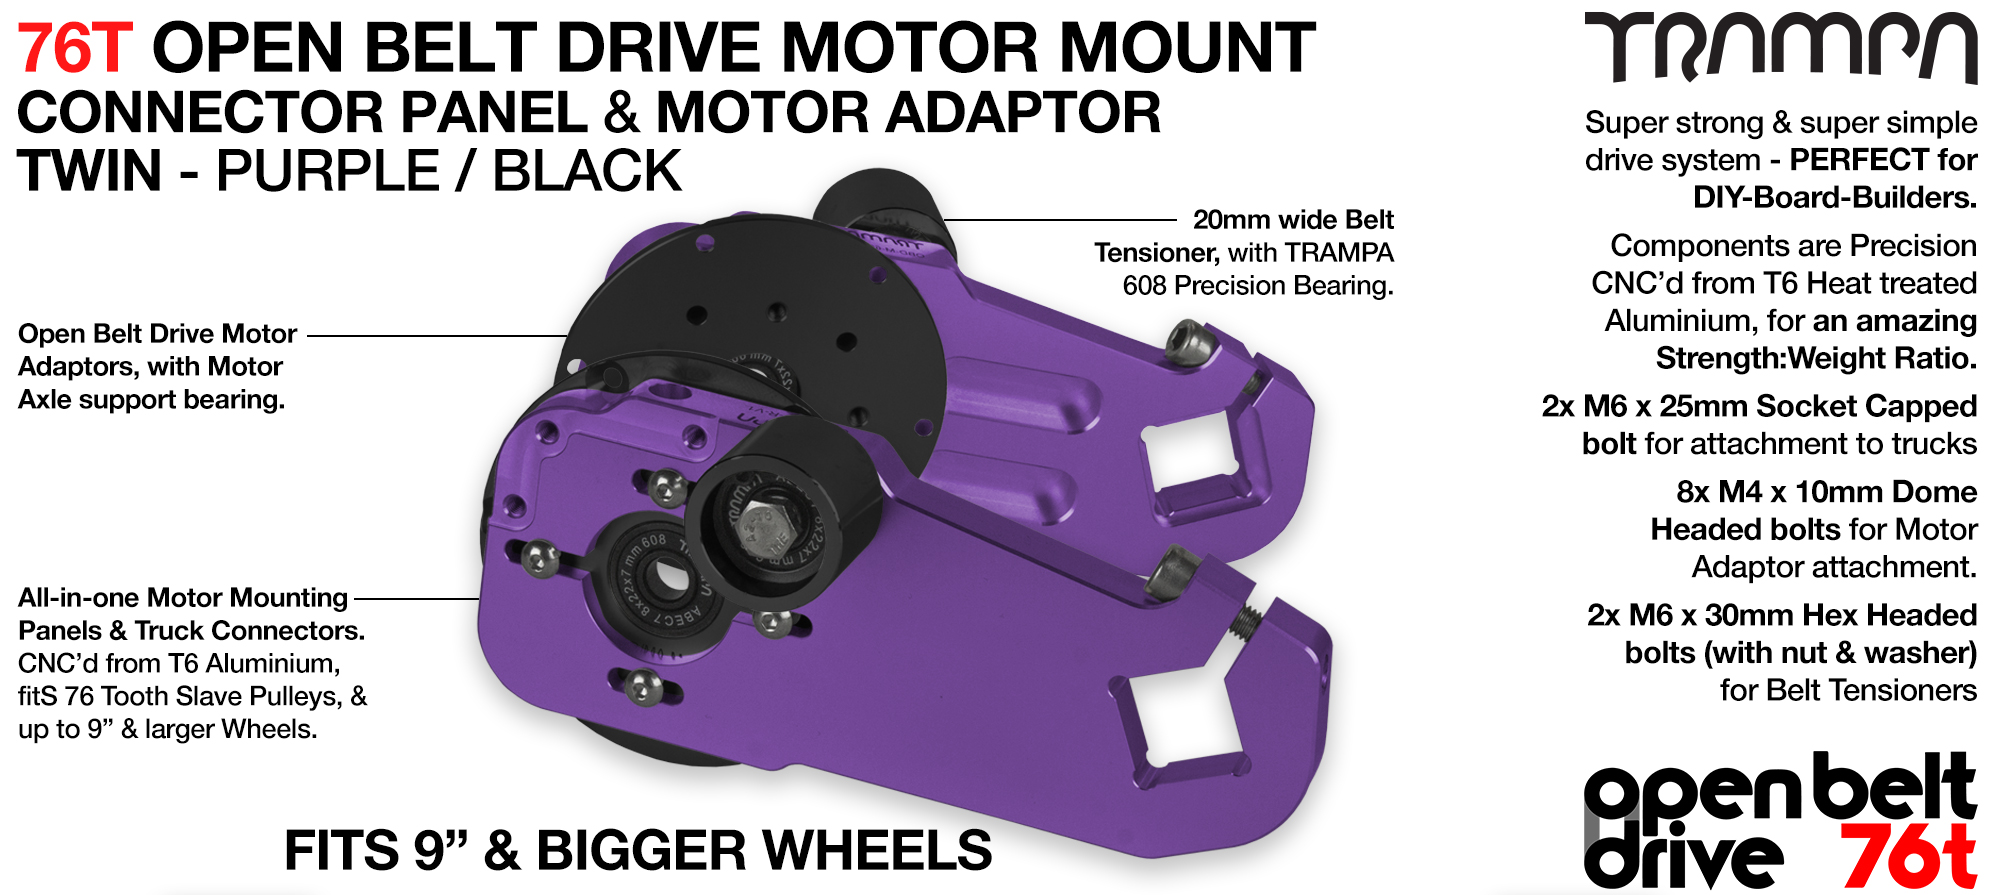 76T Open Belt Drive Motor Mount & Motor Adaptor - TWIN PURPLE